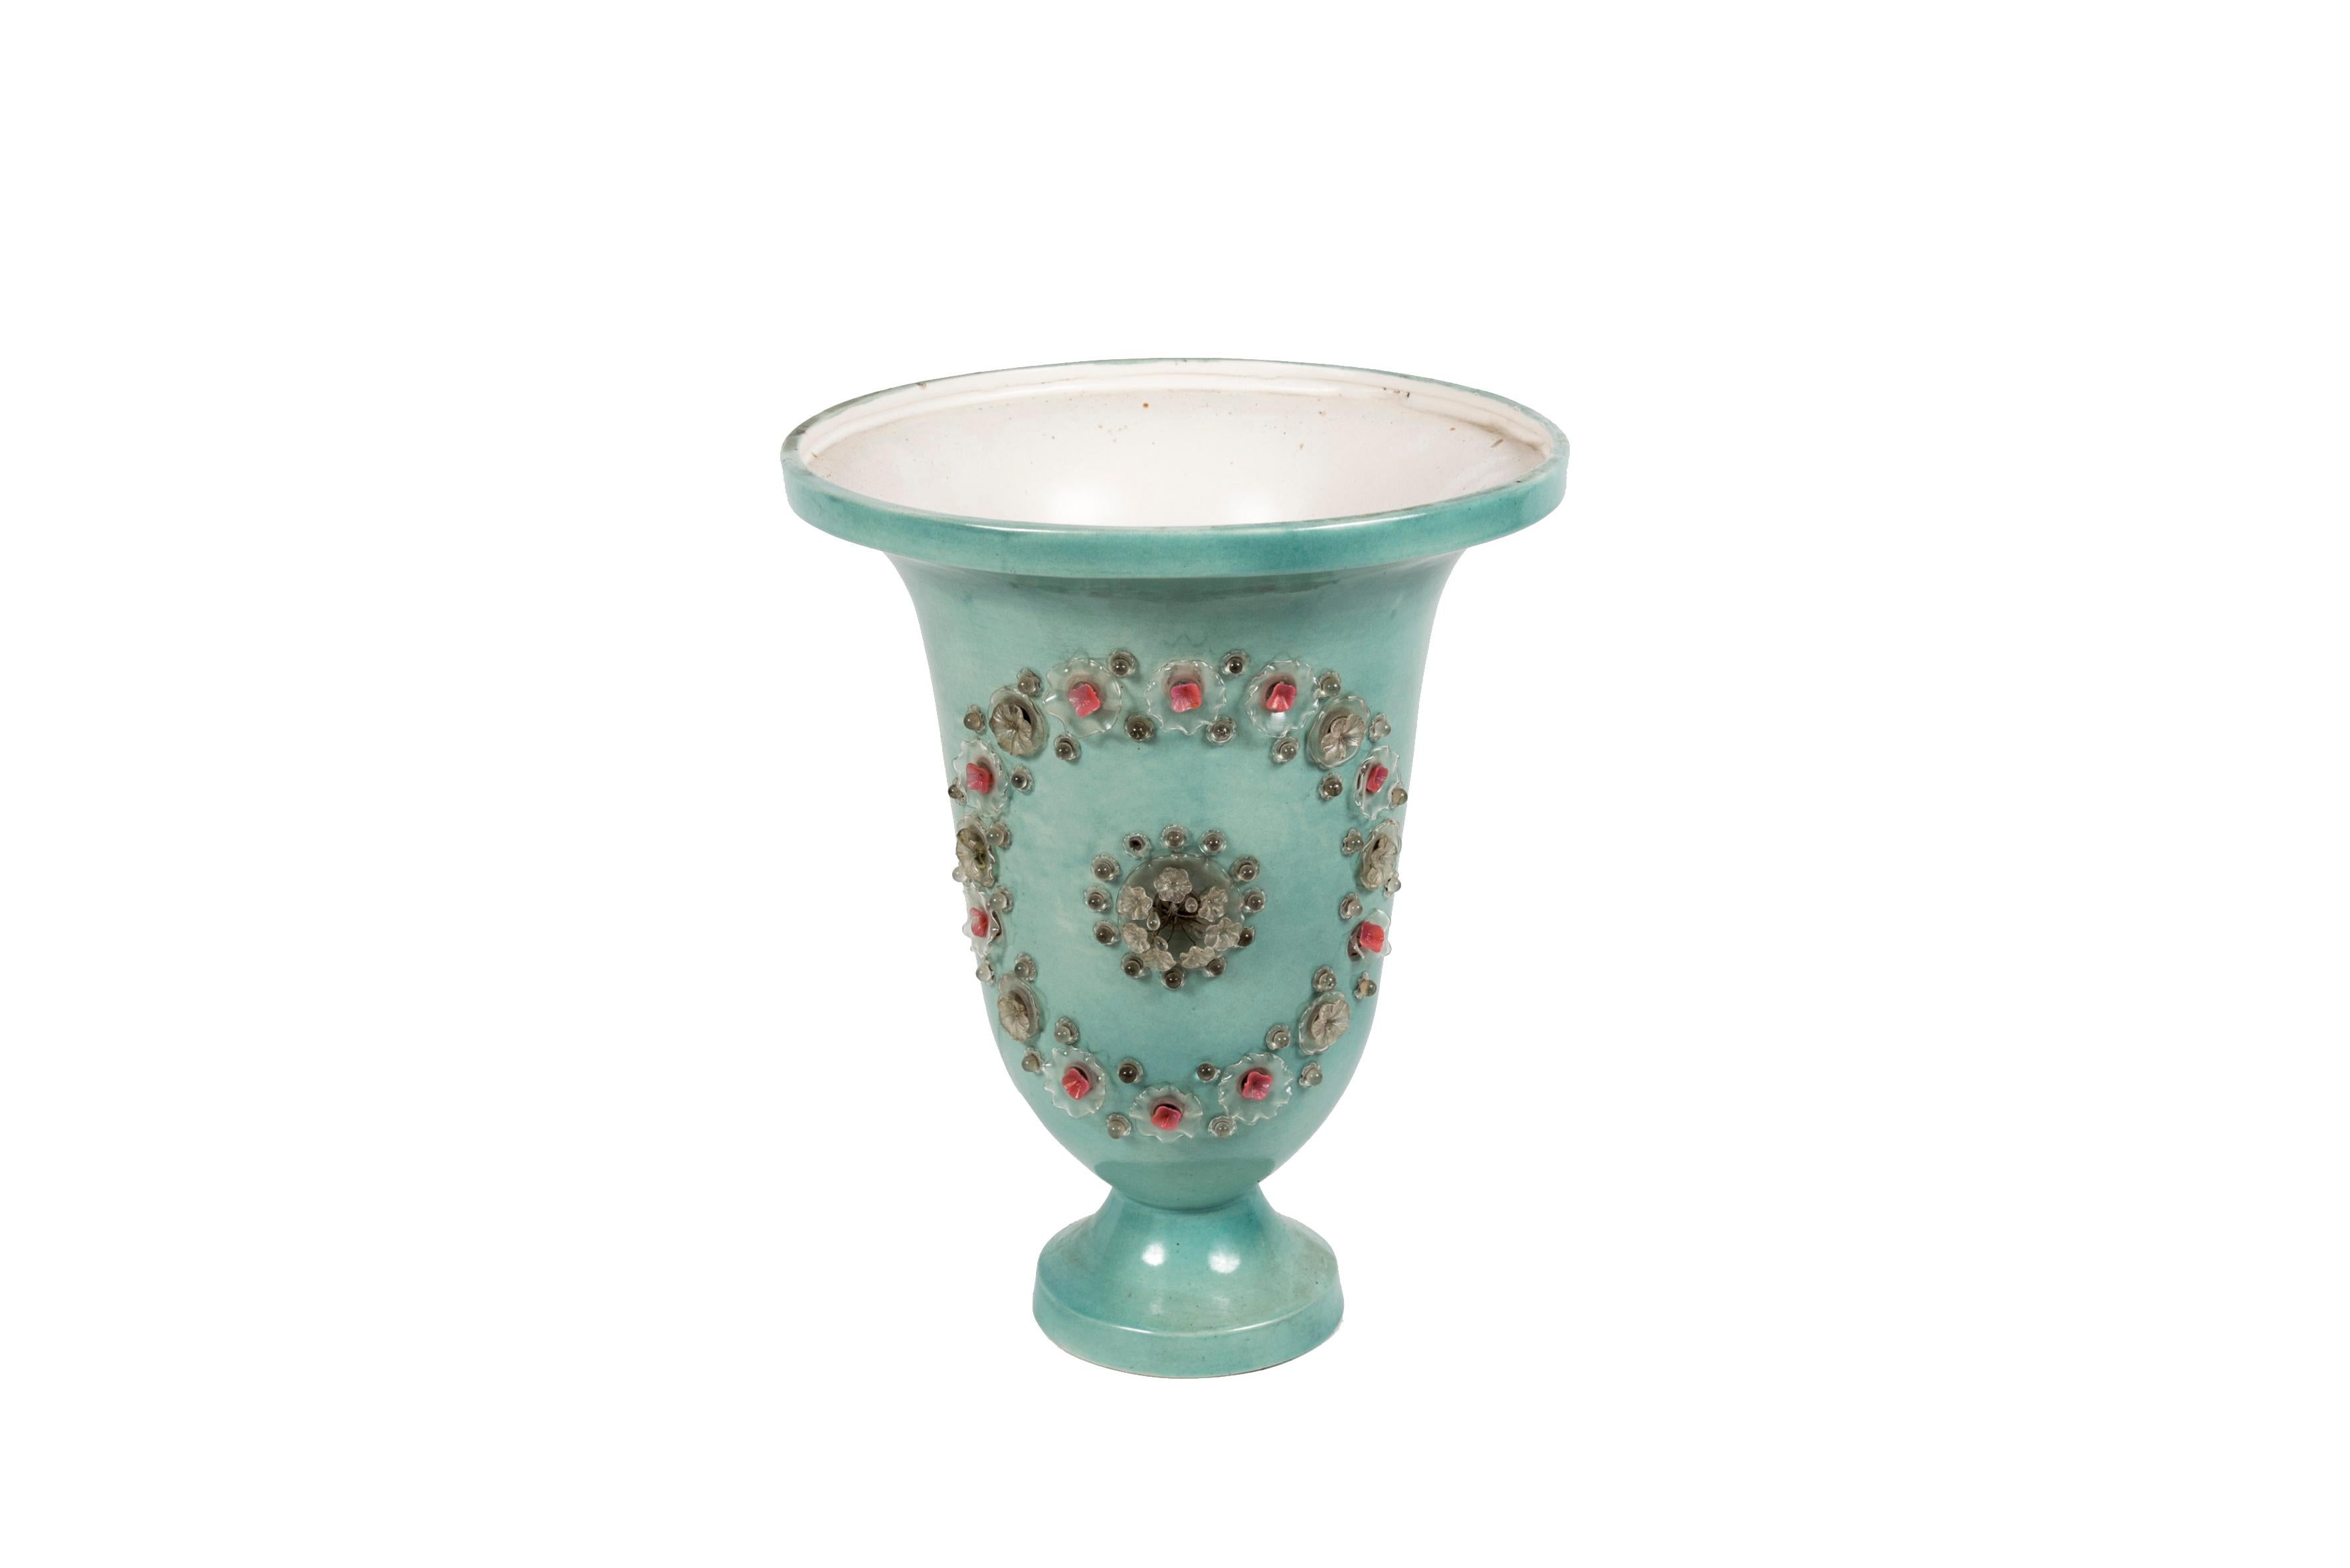 Rare lampe vasque en céramique des années 1940 par Marie Chauvel
France
